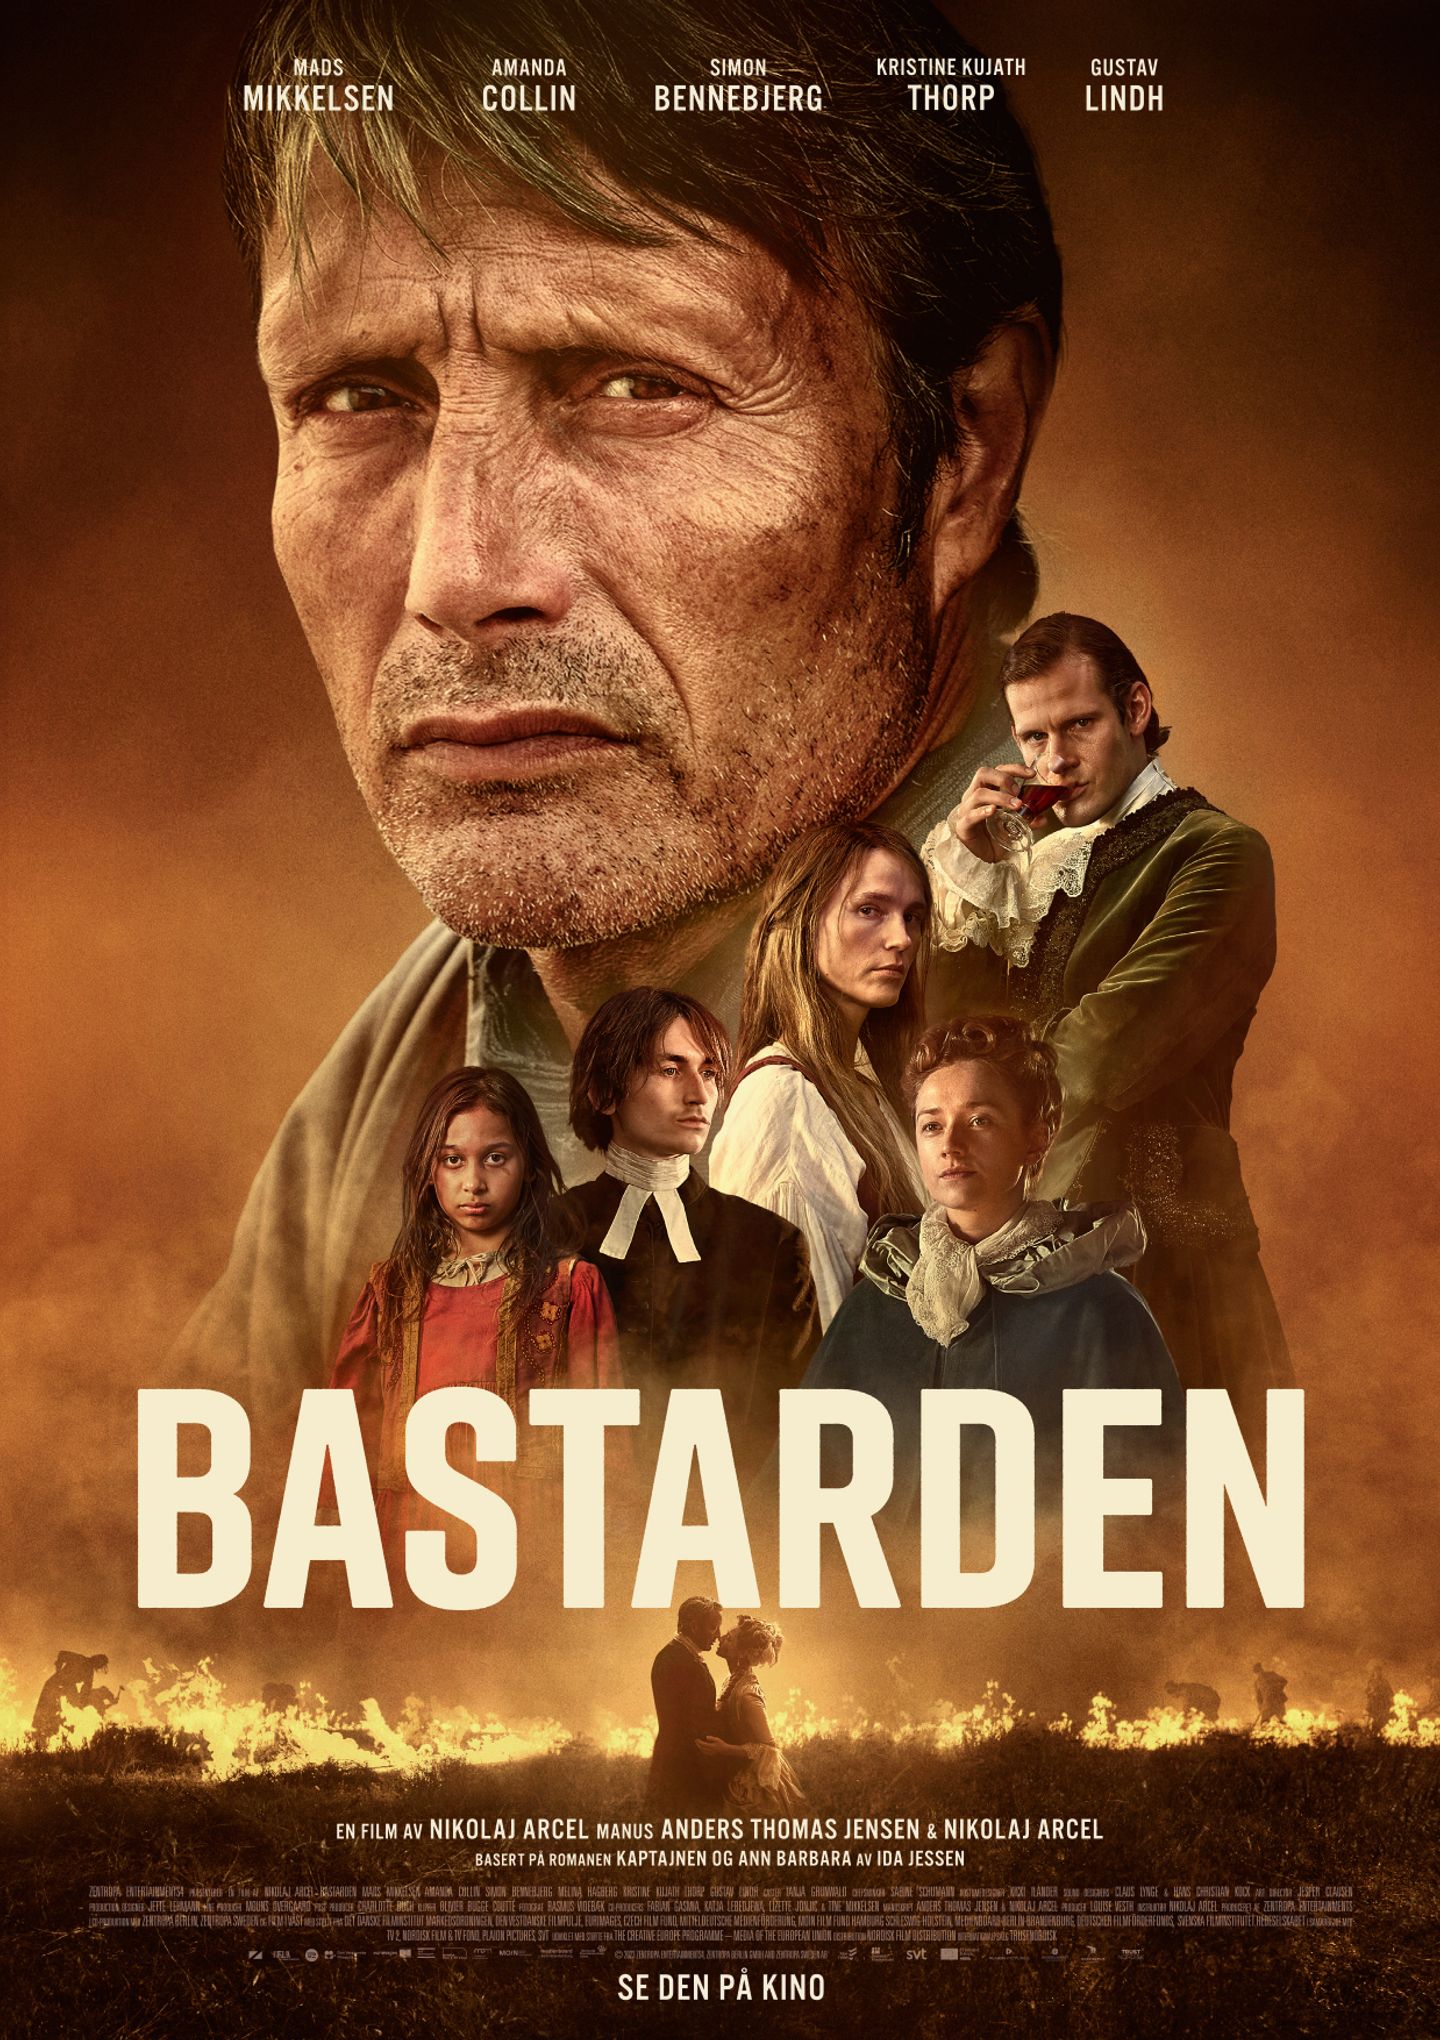 Plakat for 'Bastarden'